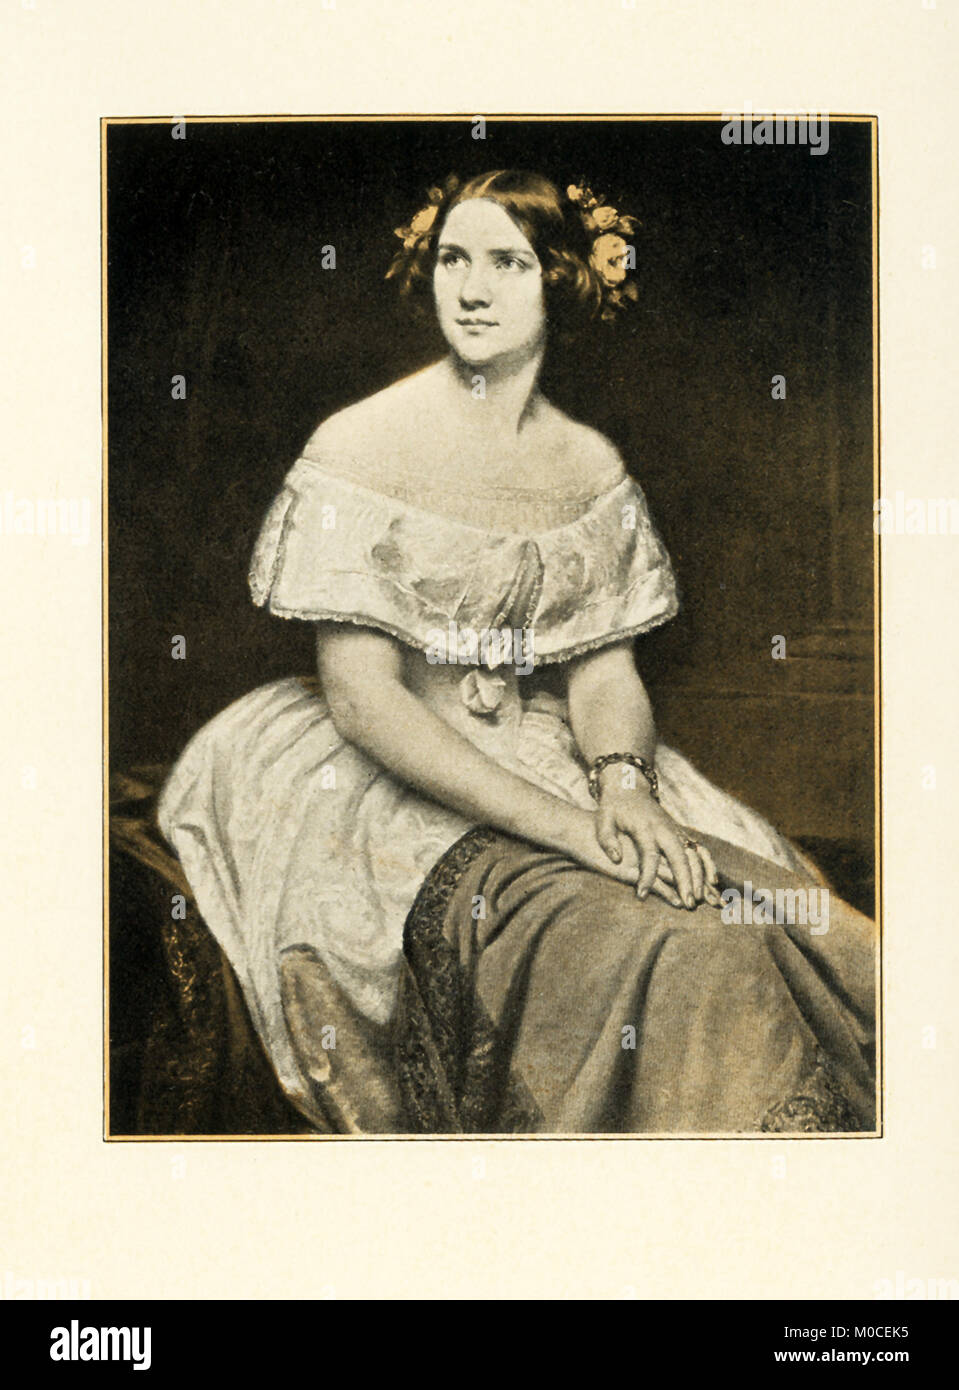 Questa foto/illustrazione mostra Jenny Lind (1820-1887), che una volta era chiamato 'una delle più belle perle del mondo coroncina della canzone.' nata a Stoccolma e ha fatto la sua apparizione in opera all'inizio. Ella divenne un enorme successo, non solo nella sua terra nativa, ma anche a Londra. Nel 1849, ha lasciato il palco e il cantato solo in concerti. Nel 1850, ha visitato gli Stati Uniti. Lei è stato notato per il suo controllo tecnico di una voce di soprano di grande bussola, potenza, dolcezza e perfetta purezza. Foto Stock